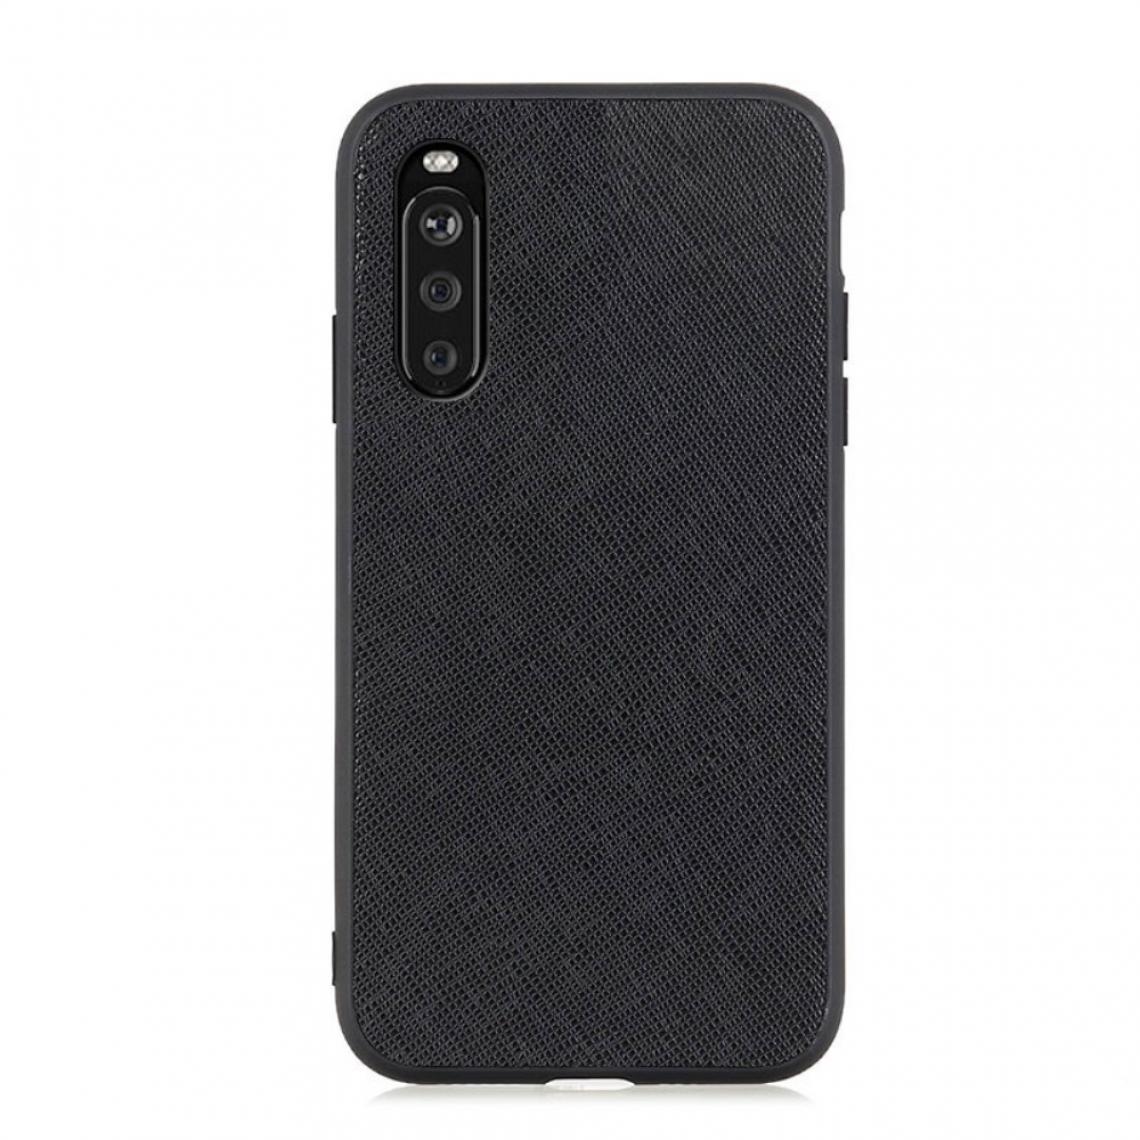 Other - Coque en TPU + cuir véritable Texture croisée enduite rigide noir pour votre Sony Xperia 10 III - Coque, étui smartphone